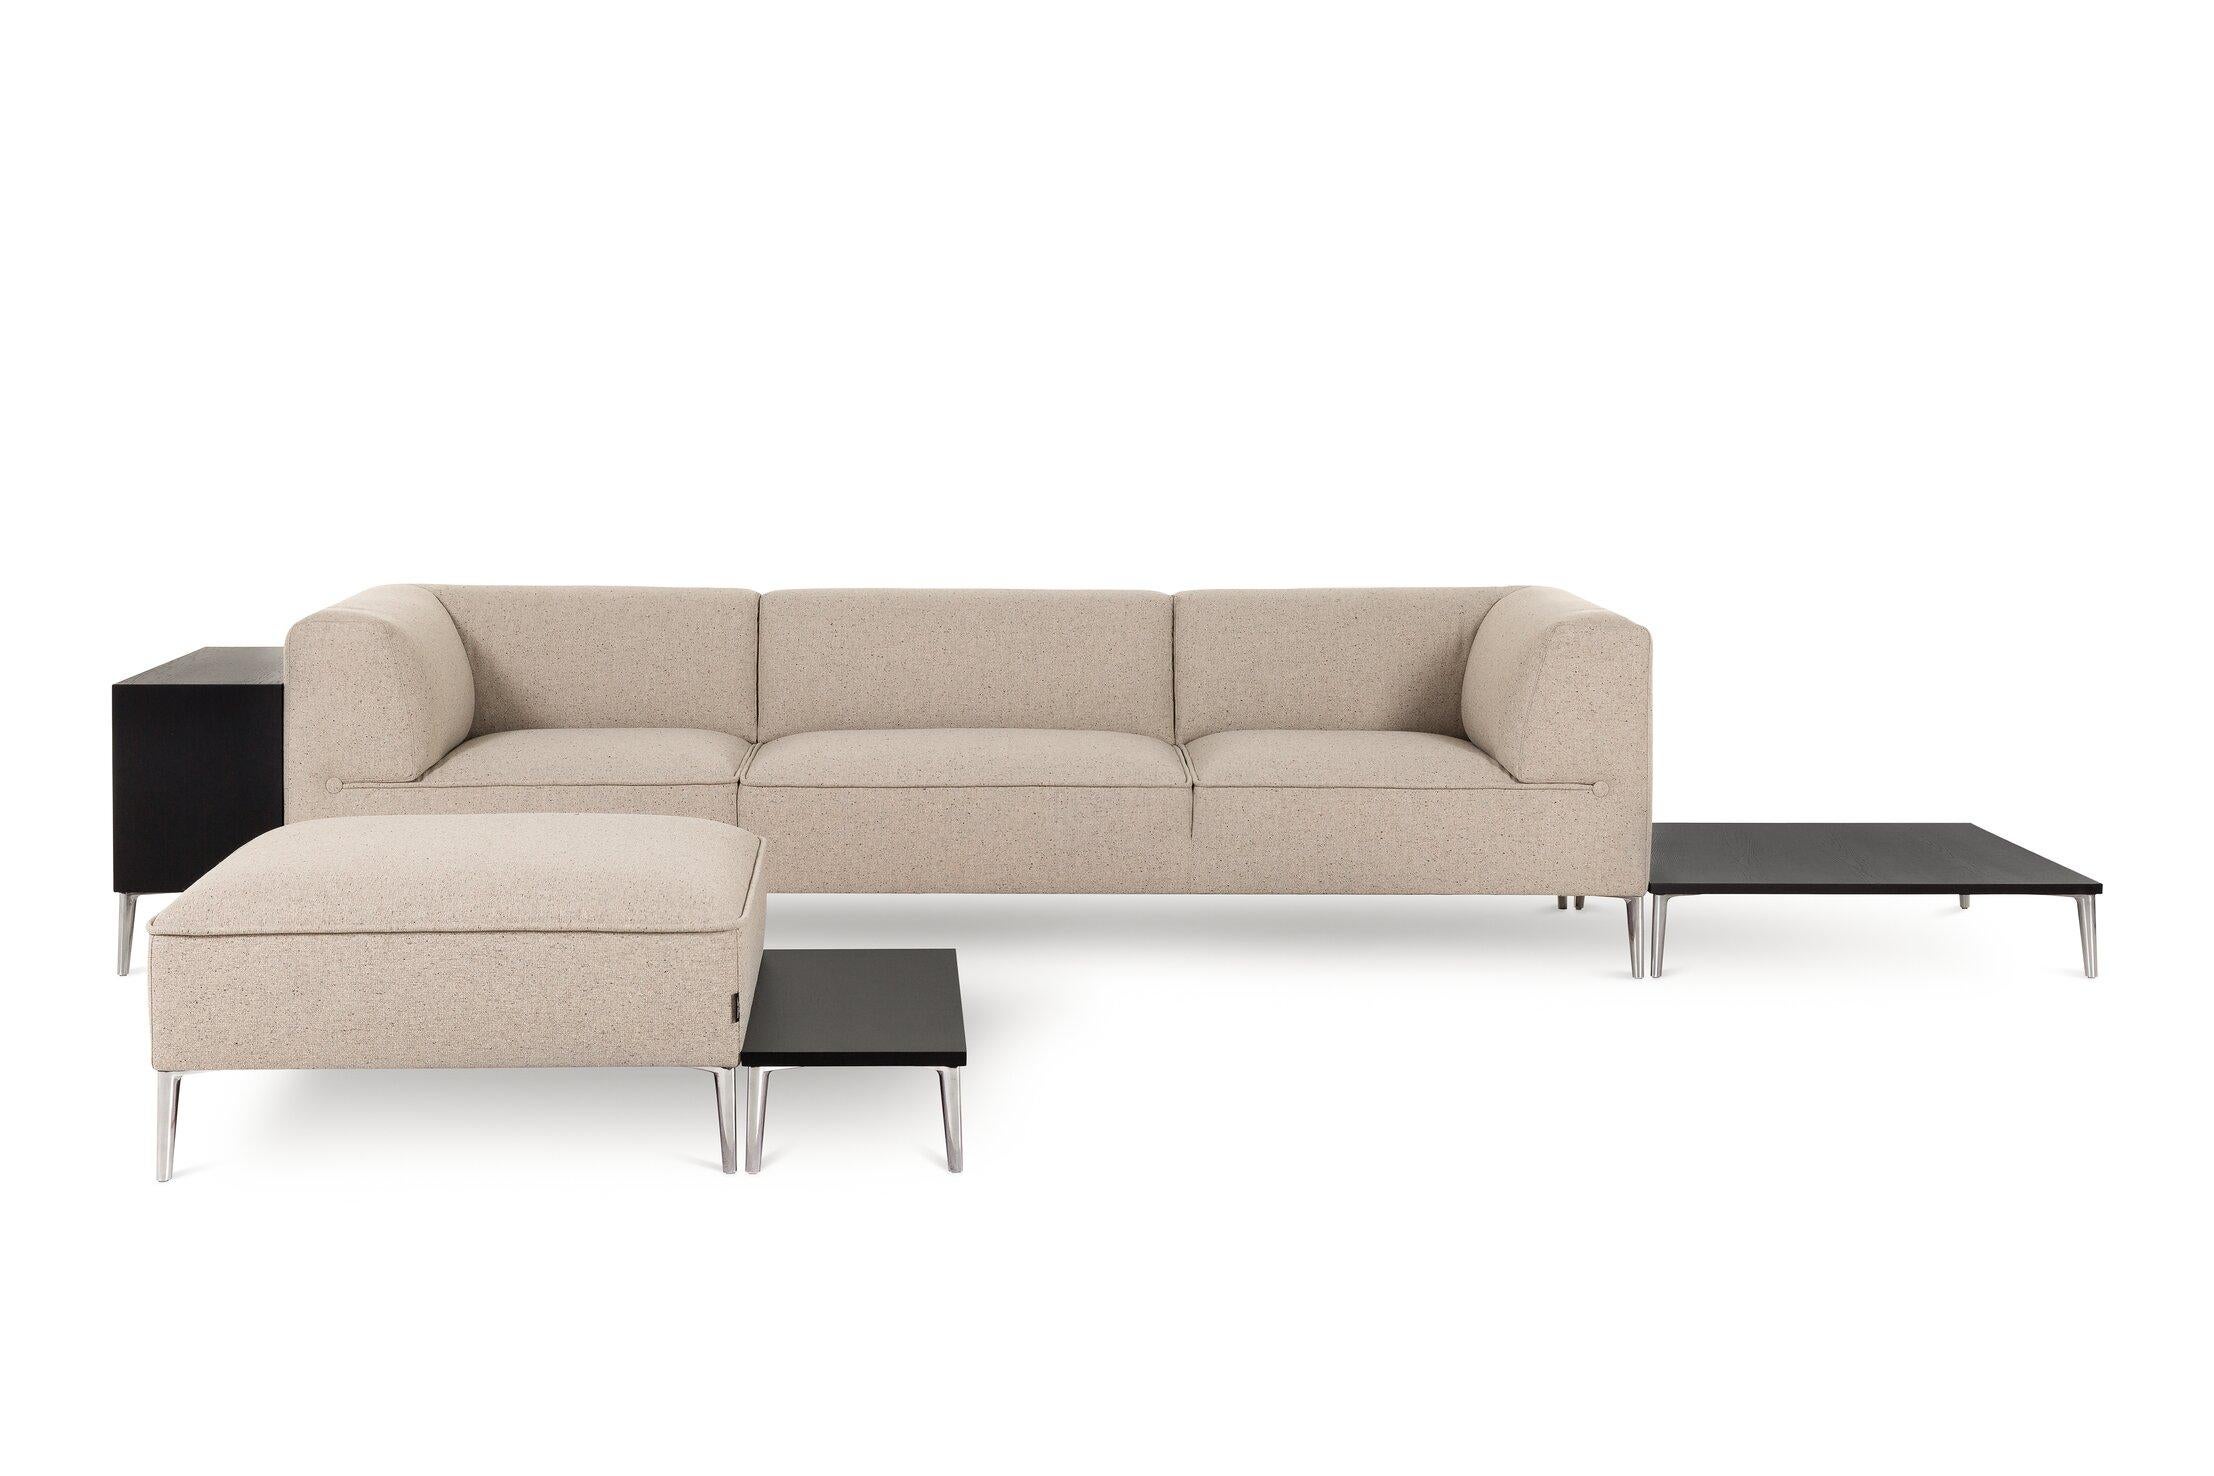 Das Sofa so good Demi Tisch ist Teil des modularen Sofa so good. Es kann als echter Mittelpunkt dienen oder sich in Ihre eigene Sofa So Good Konfiguration einfügen. Vielseitig und anspruchsvoll, passt er zu jeder Einrichtung und ist in sechs